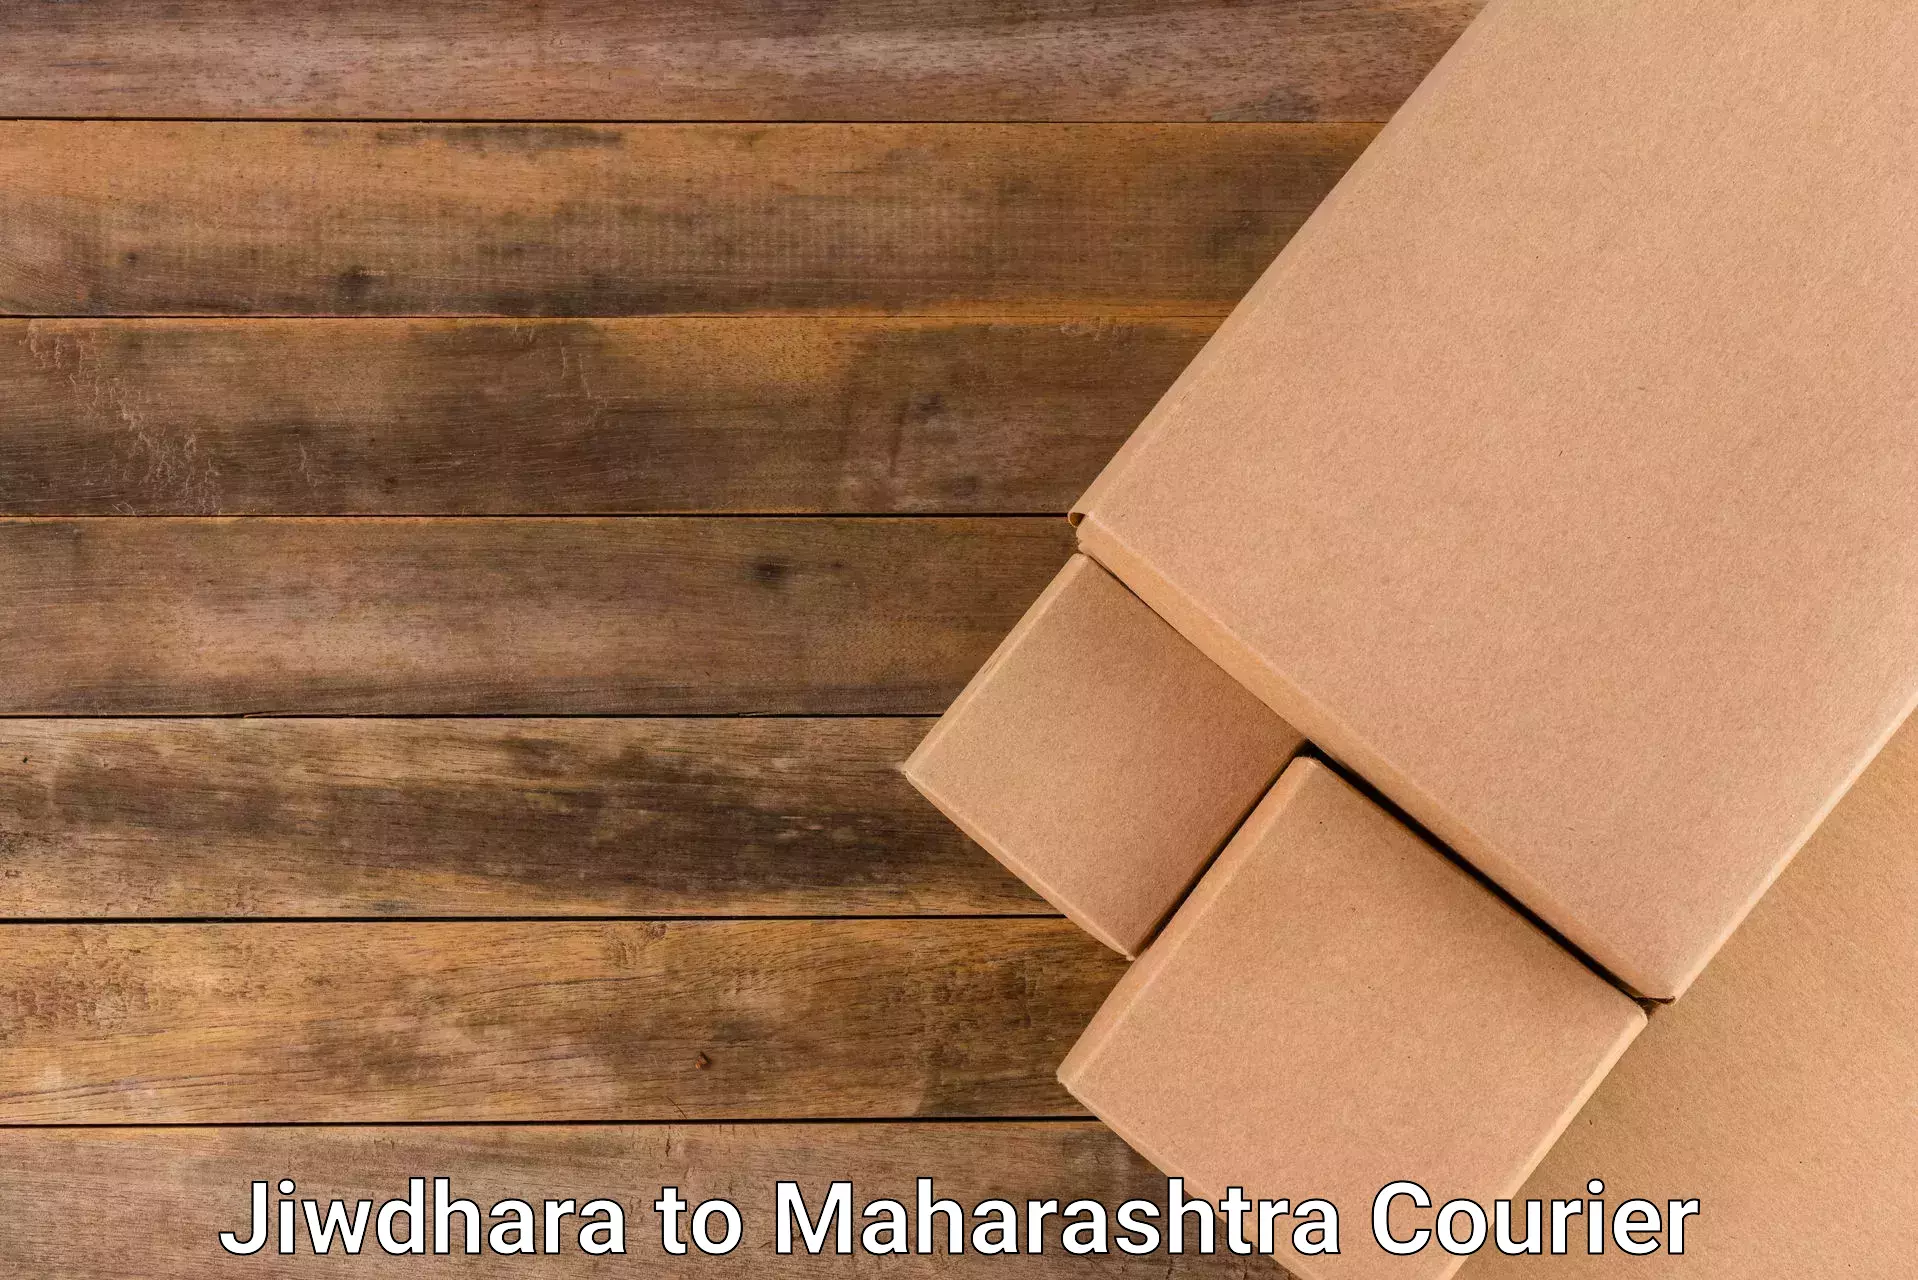 Secure package delivery in Jiwdhara to Lonavala